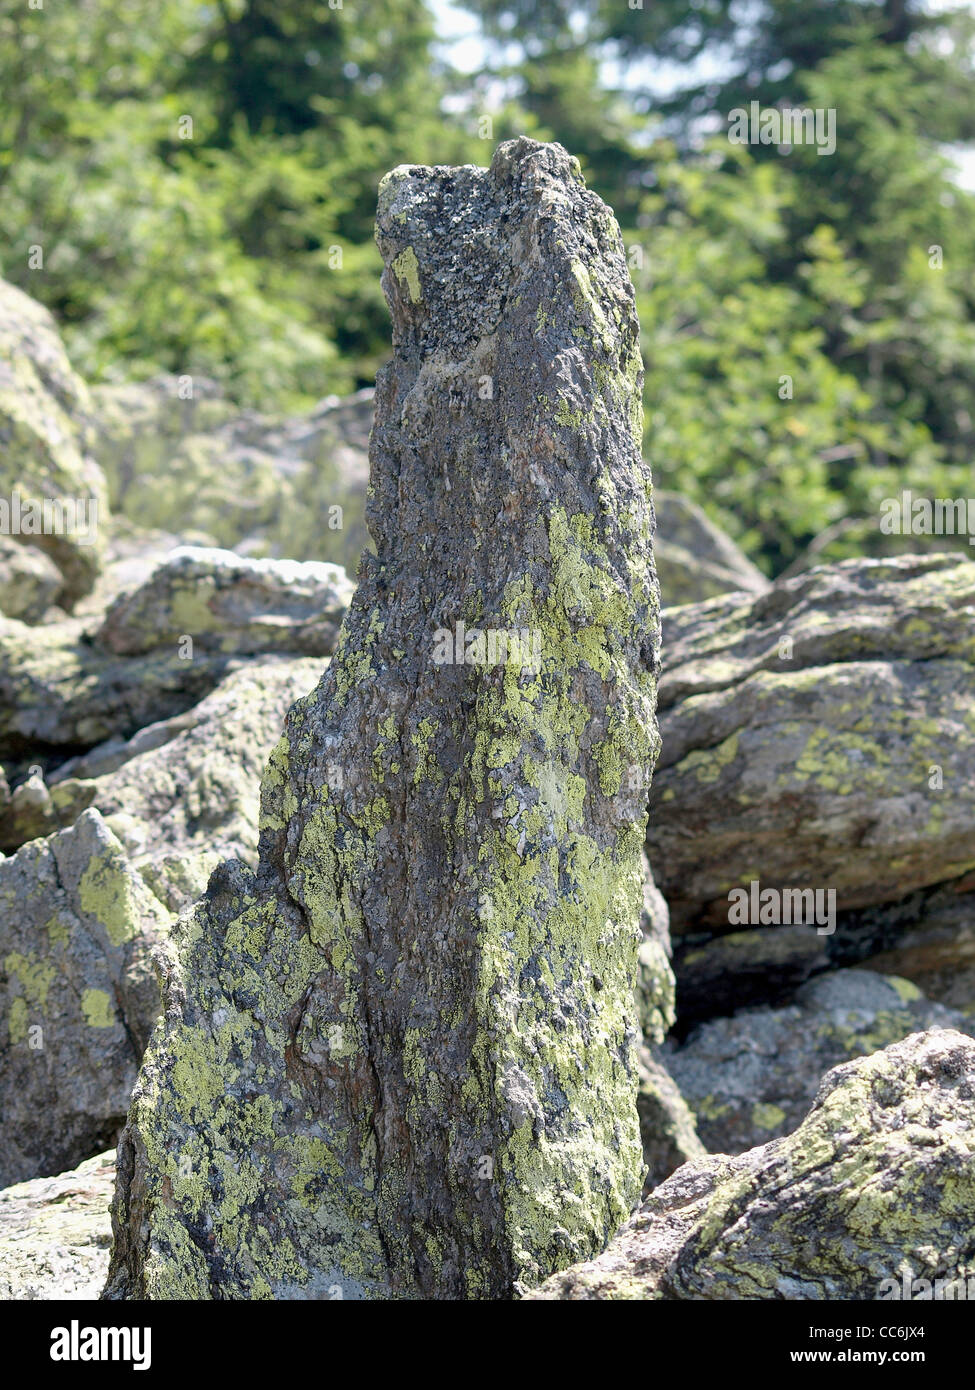 rock with lichen / Gestein mit Flechten Stock Photo